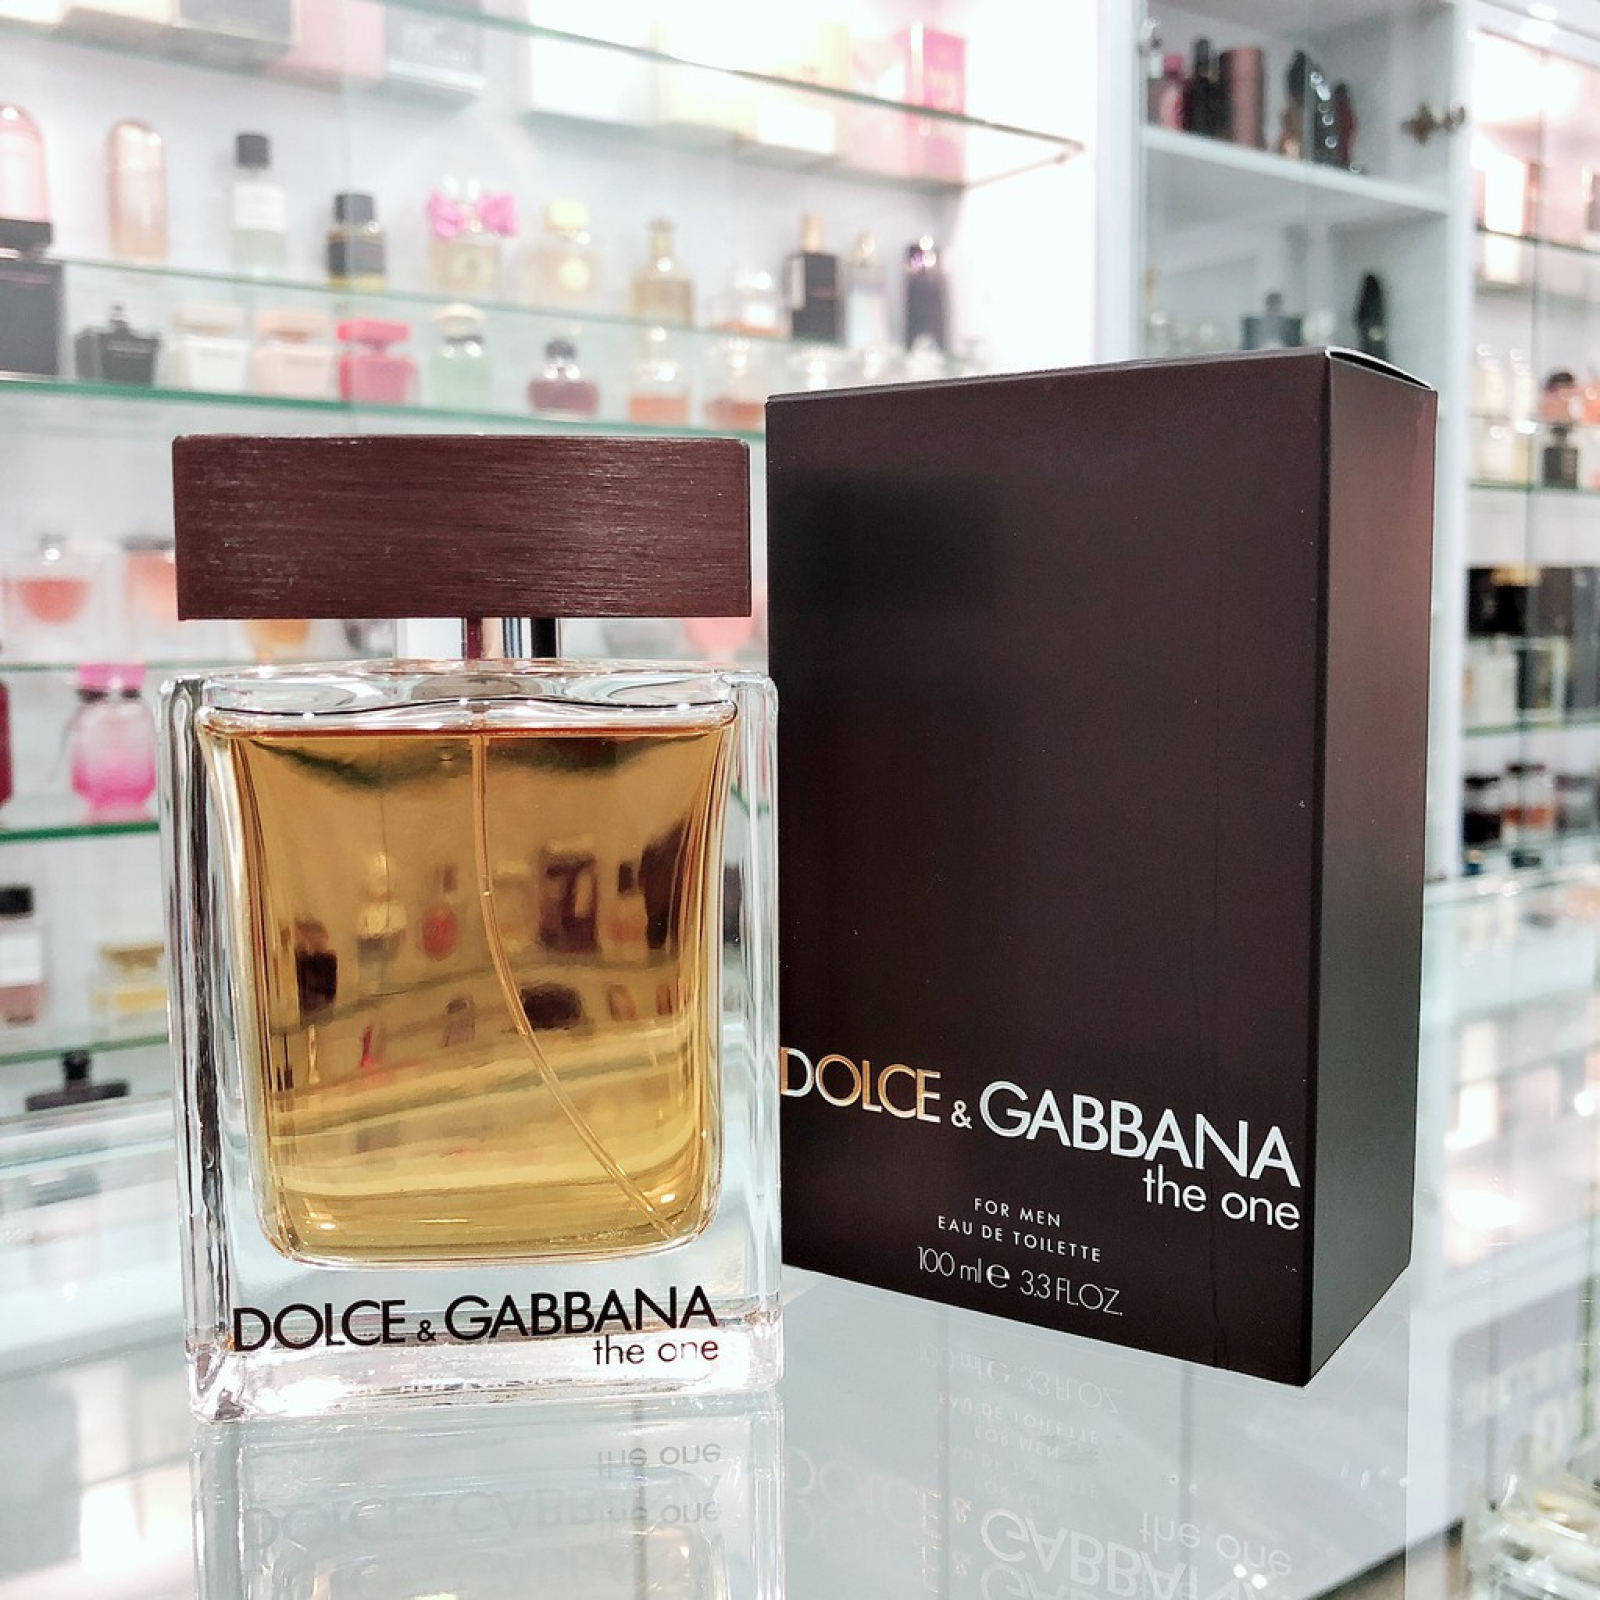 Trùm bán nước hoa cho nam Dolce & Gabbana chính hãng giá rẻ tại tphcm